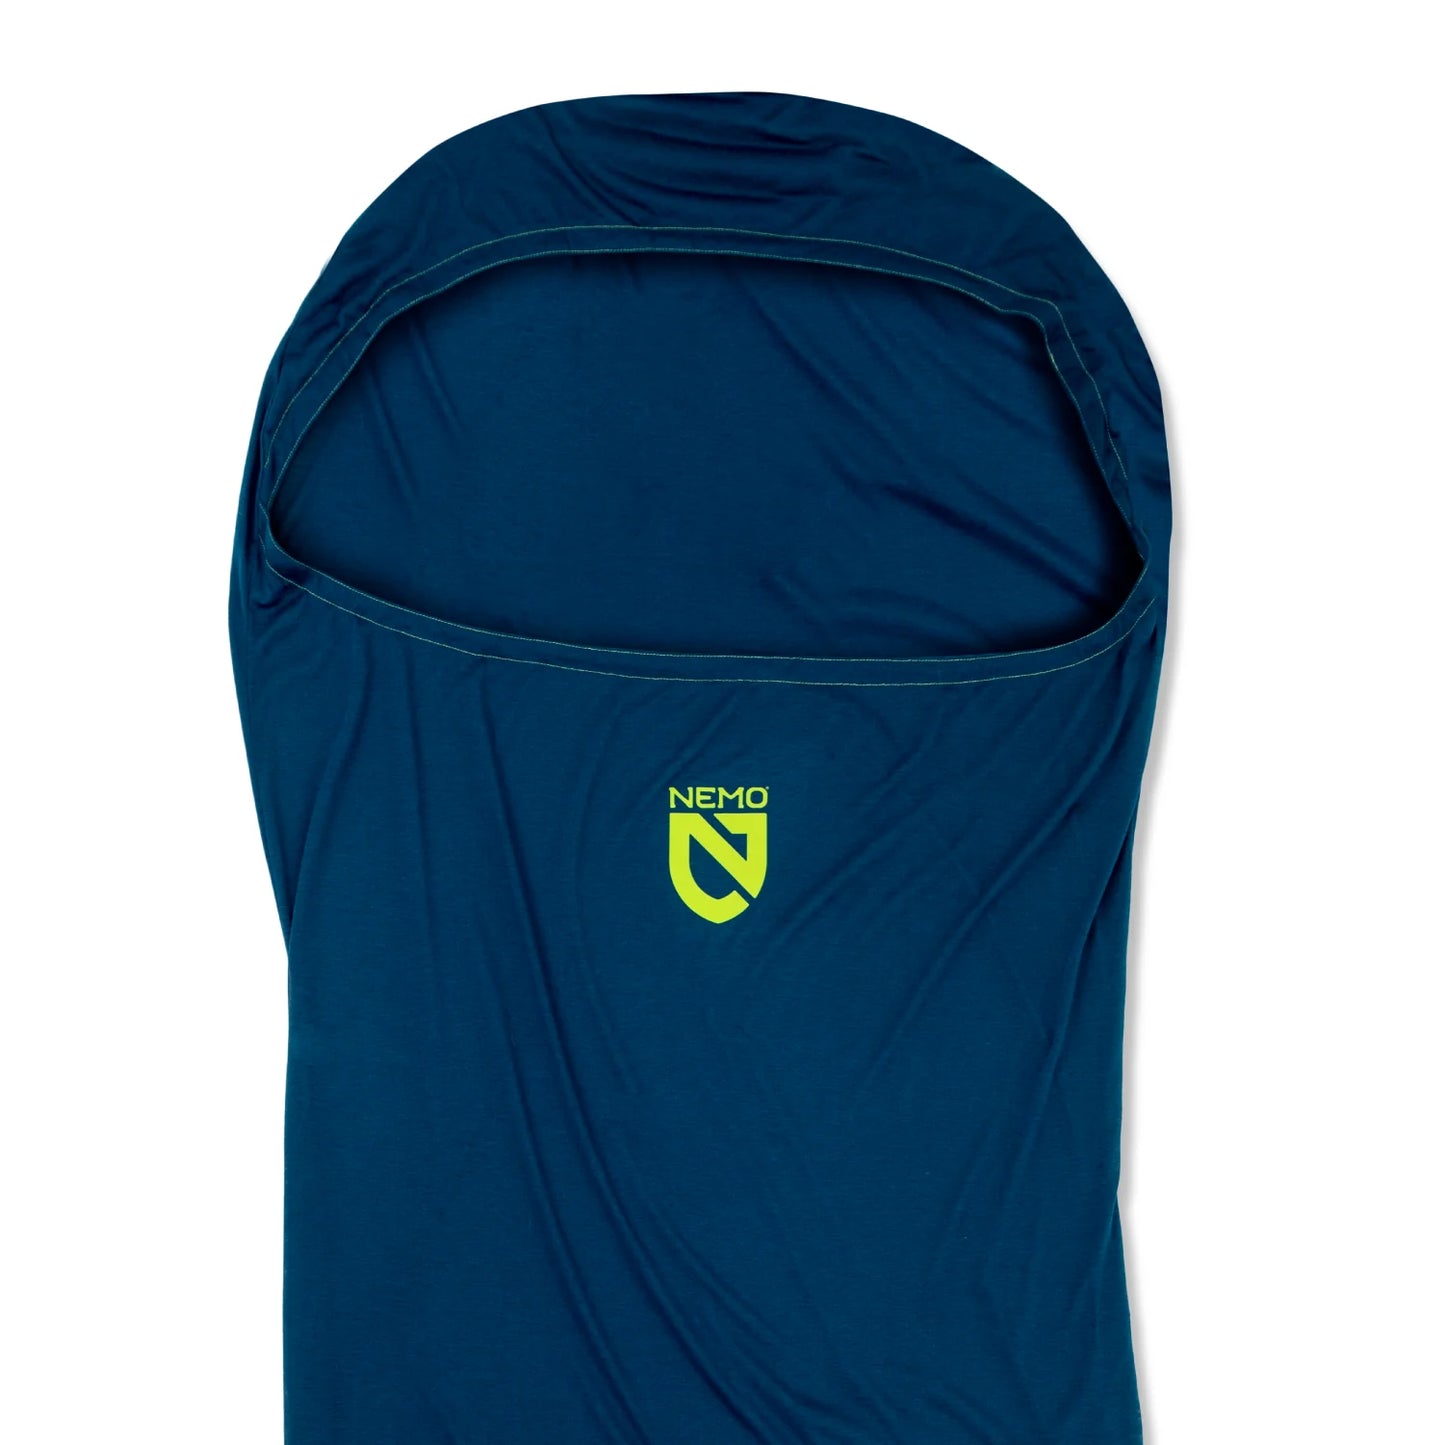 Nemo Tracer Ultralight Sleeping Bag Liner